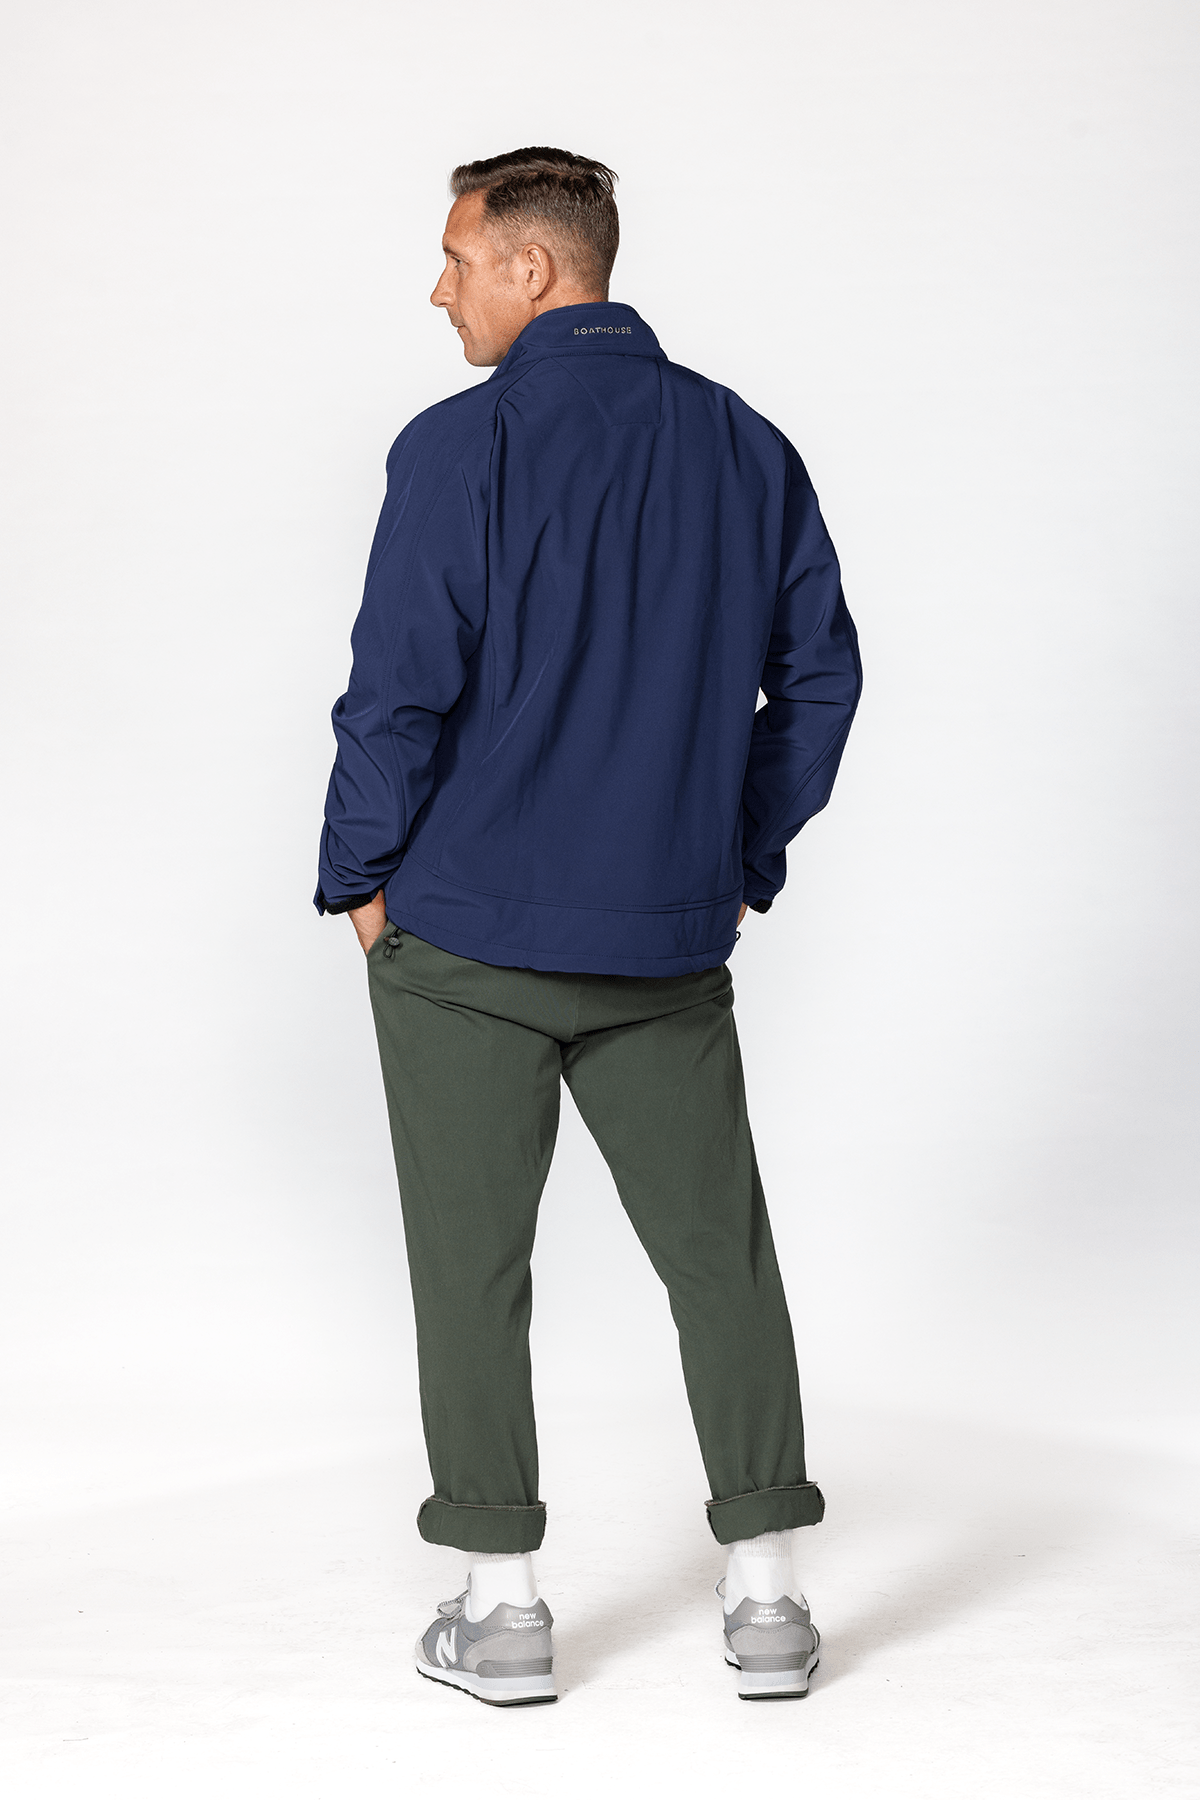 Men's Equinox Soft Shell Jacket